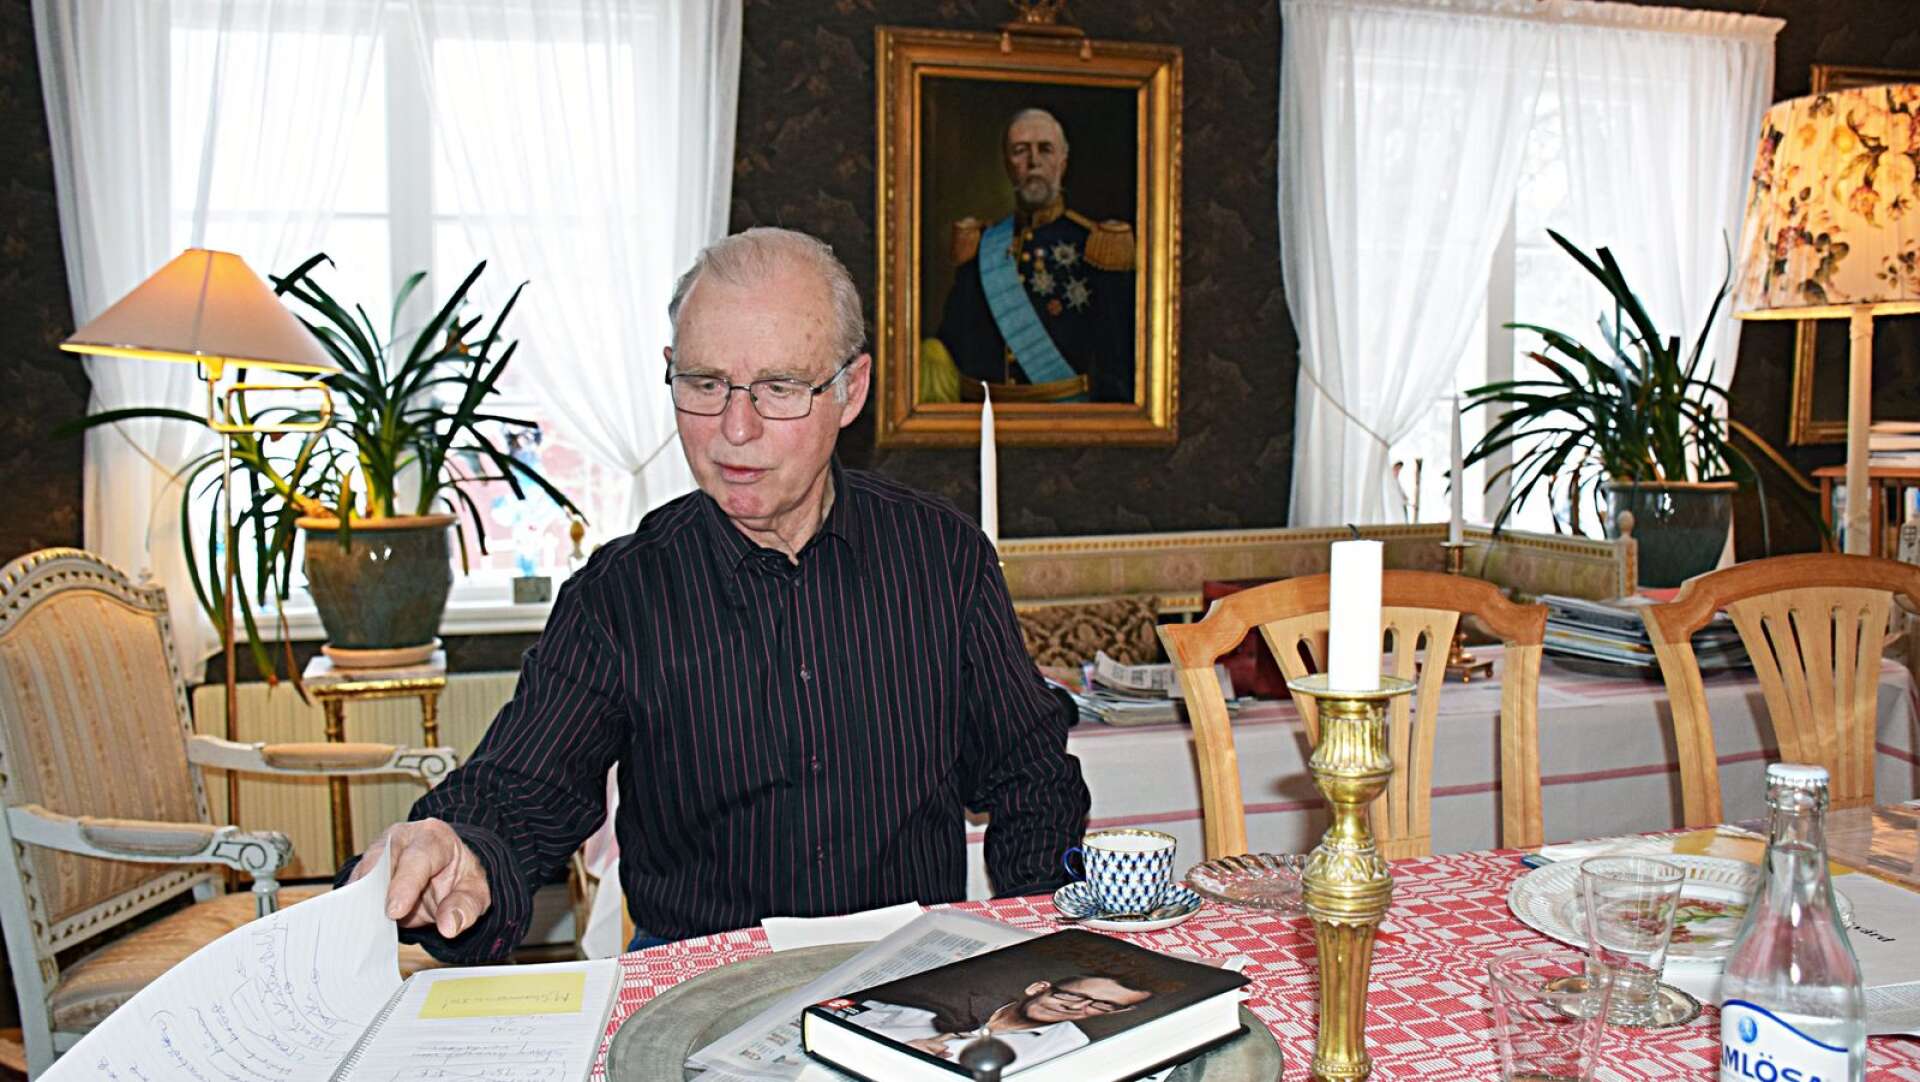  Hela Sunnes tidigare ordförande Anders Broman levererar nu skarp kritik mot partiet som han blivit utesluten ifrån.